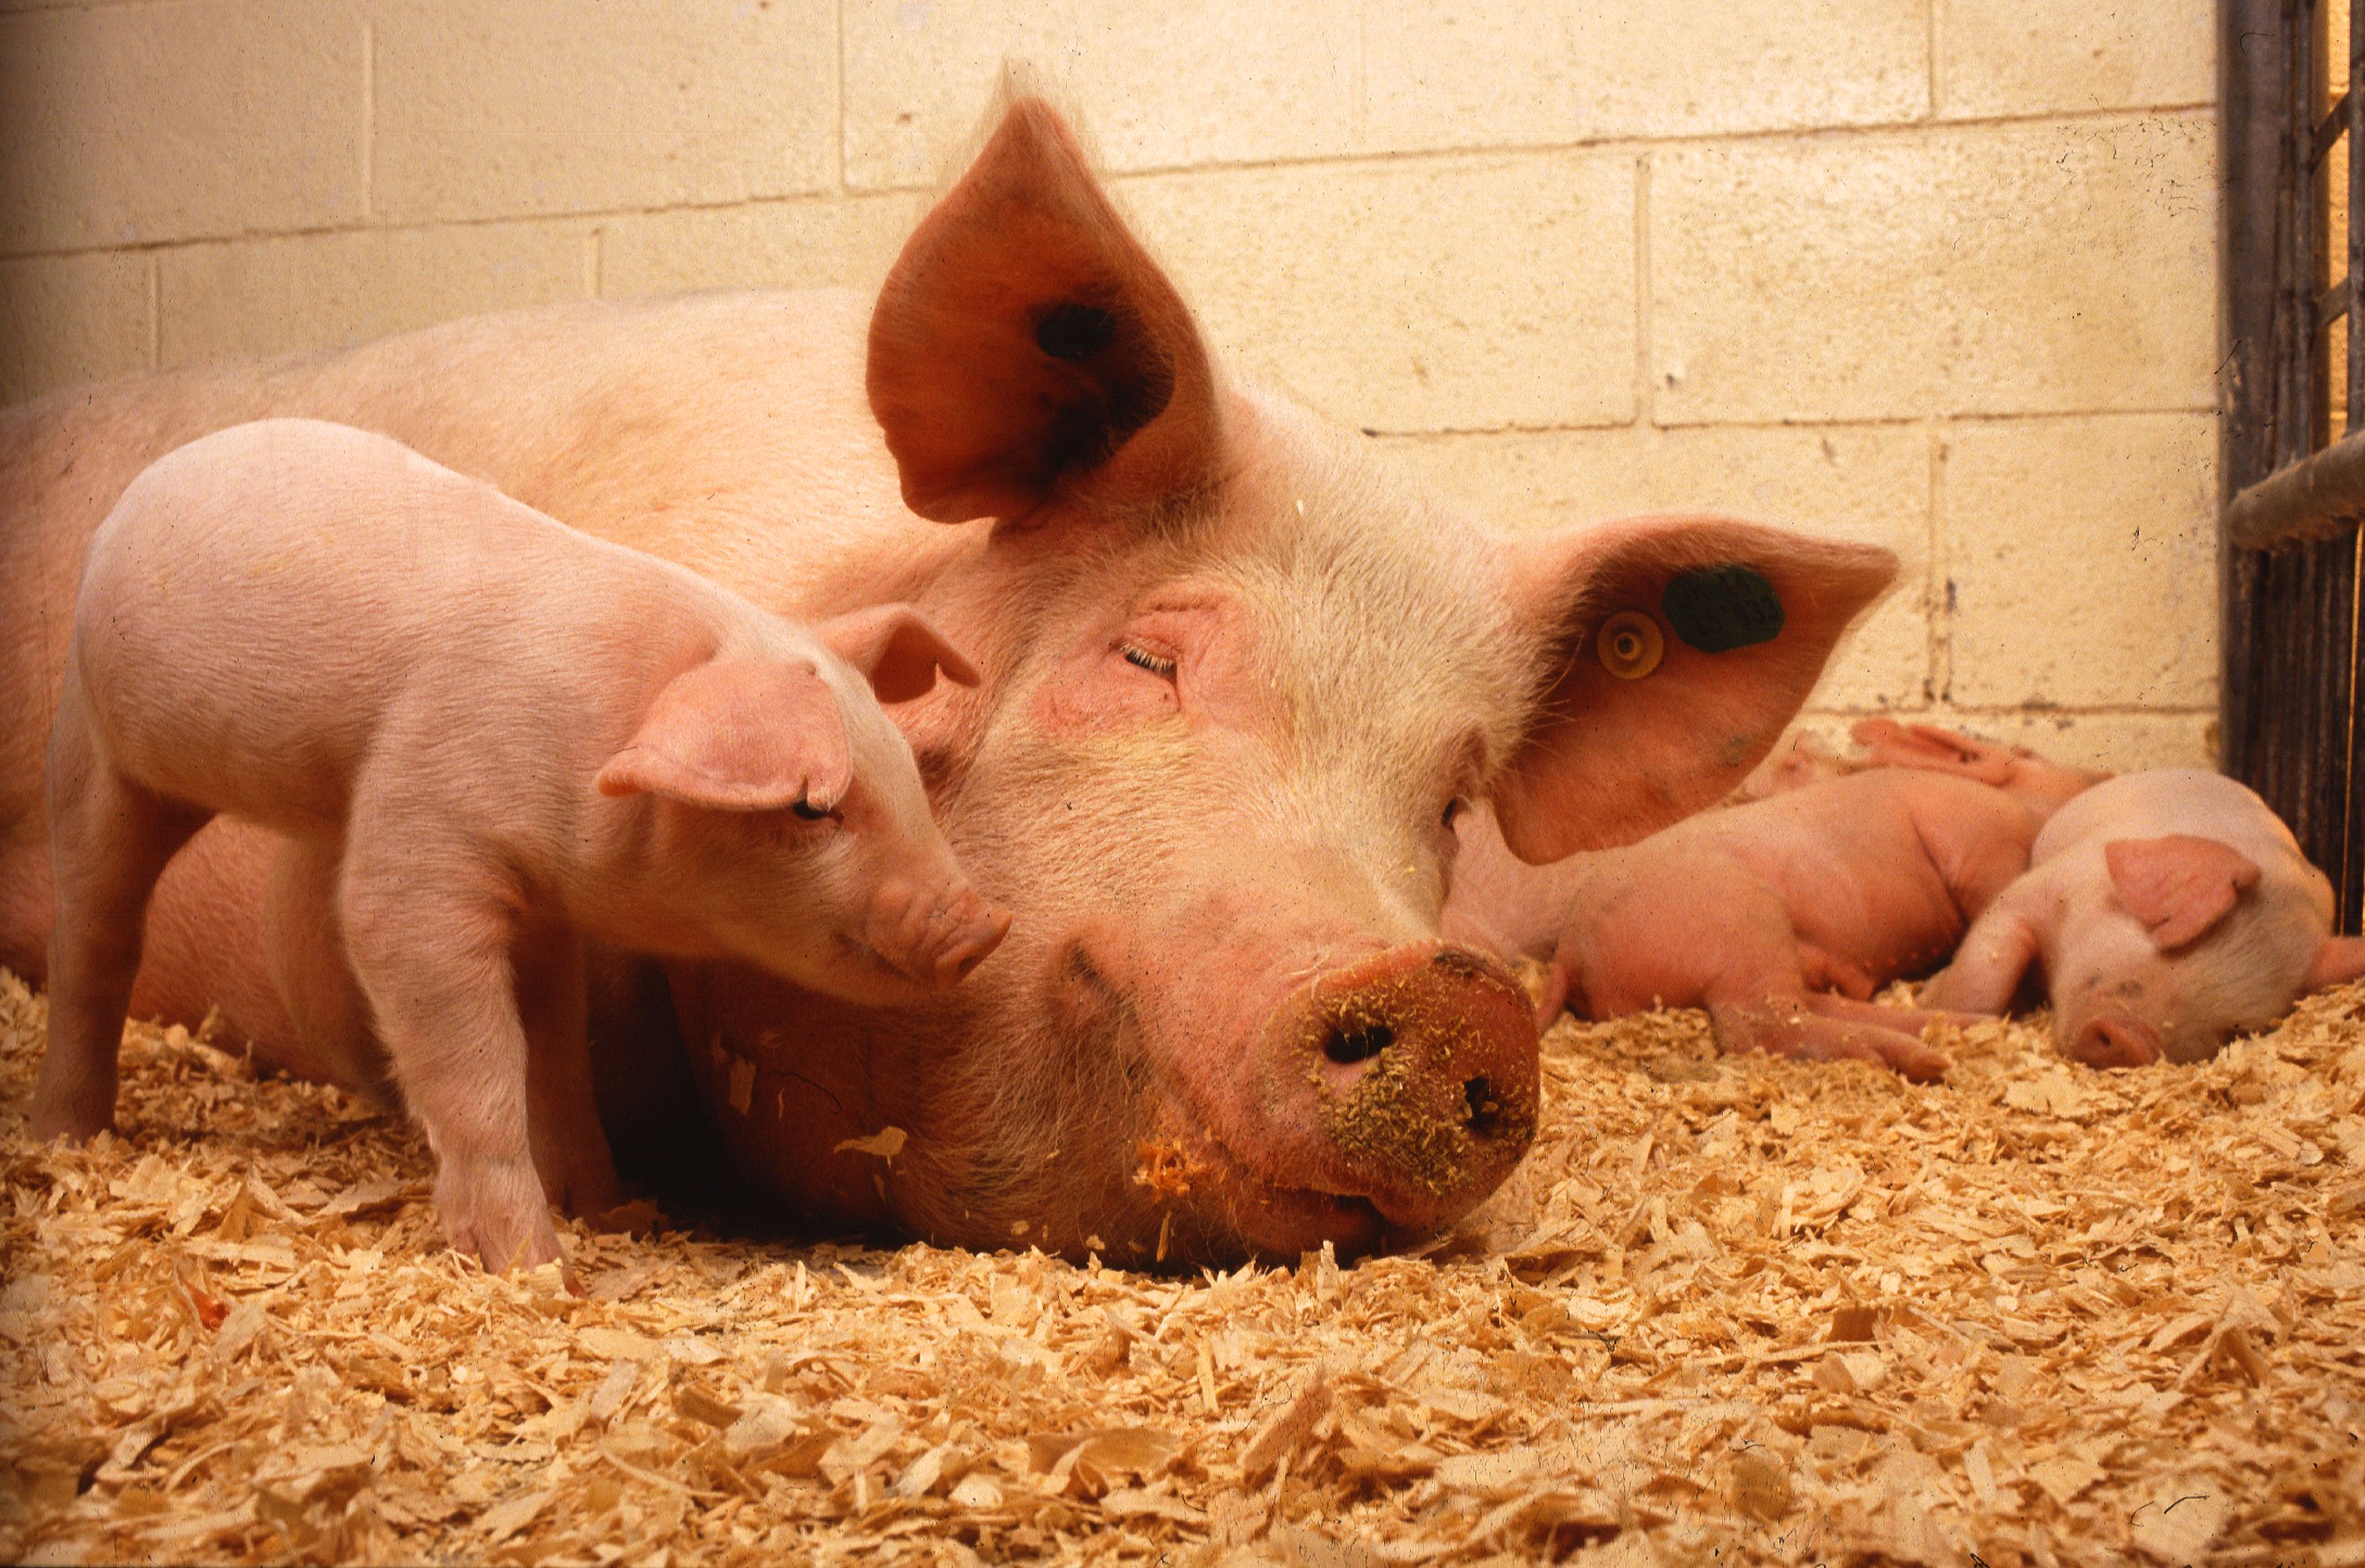 Büyümek için insan organları domuz. Ne yanlış gidebilir?